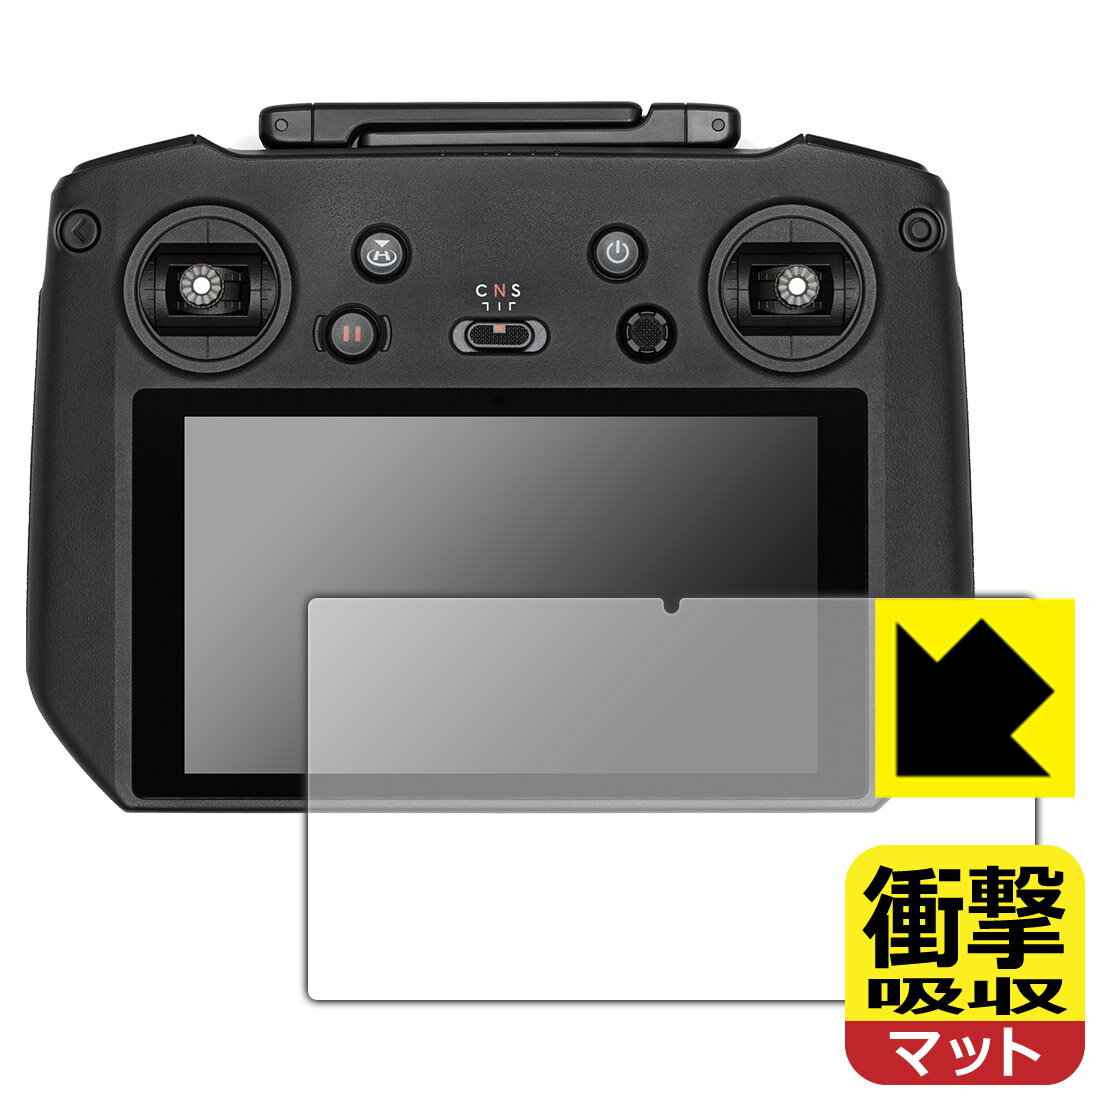 衝撃吸収保護フィルム DJI RC Pro 送信機用 (RM510) 日本製 自社製造直販